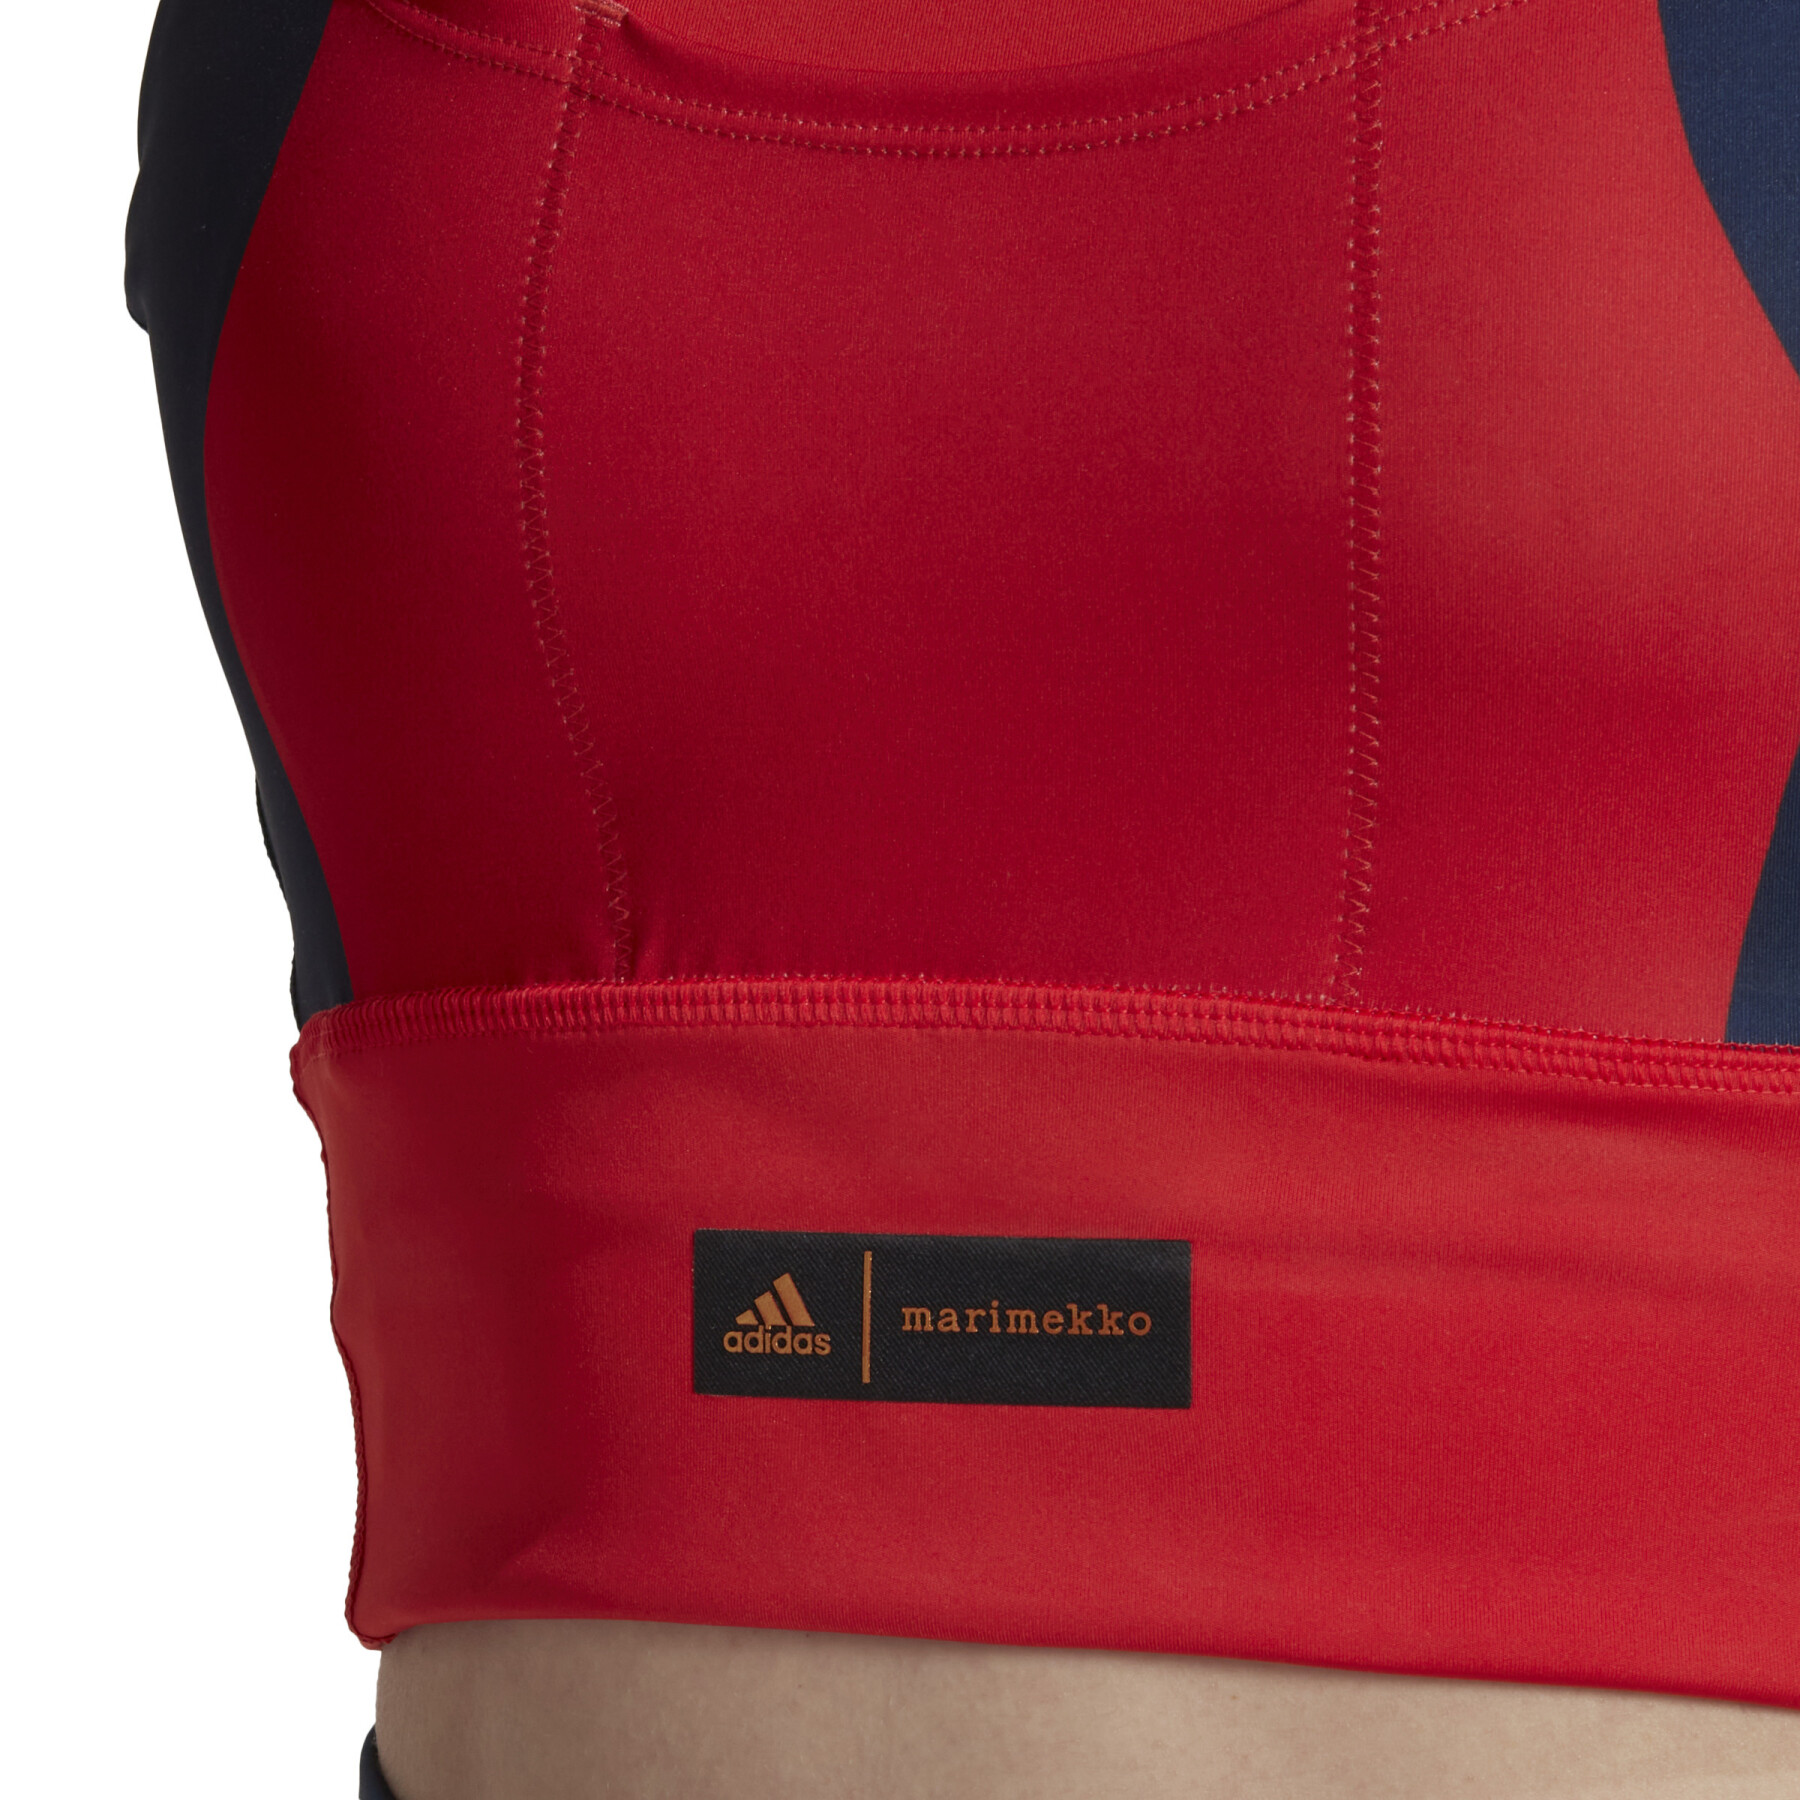 Sujetador de bolsillo de soporte medio para mujer adidas Marimekko